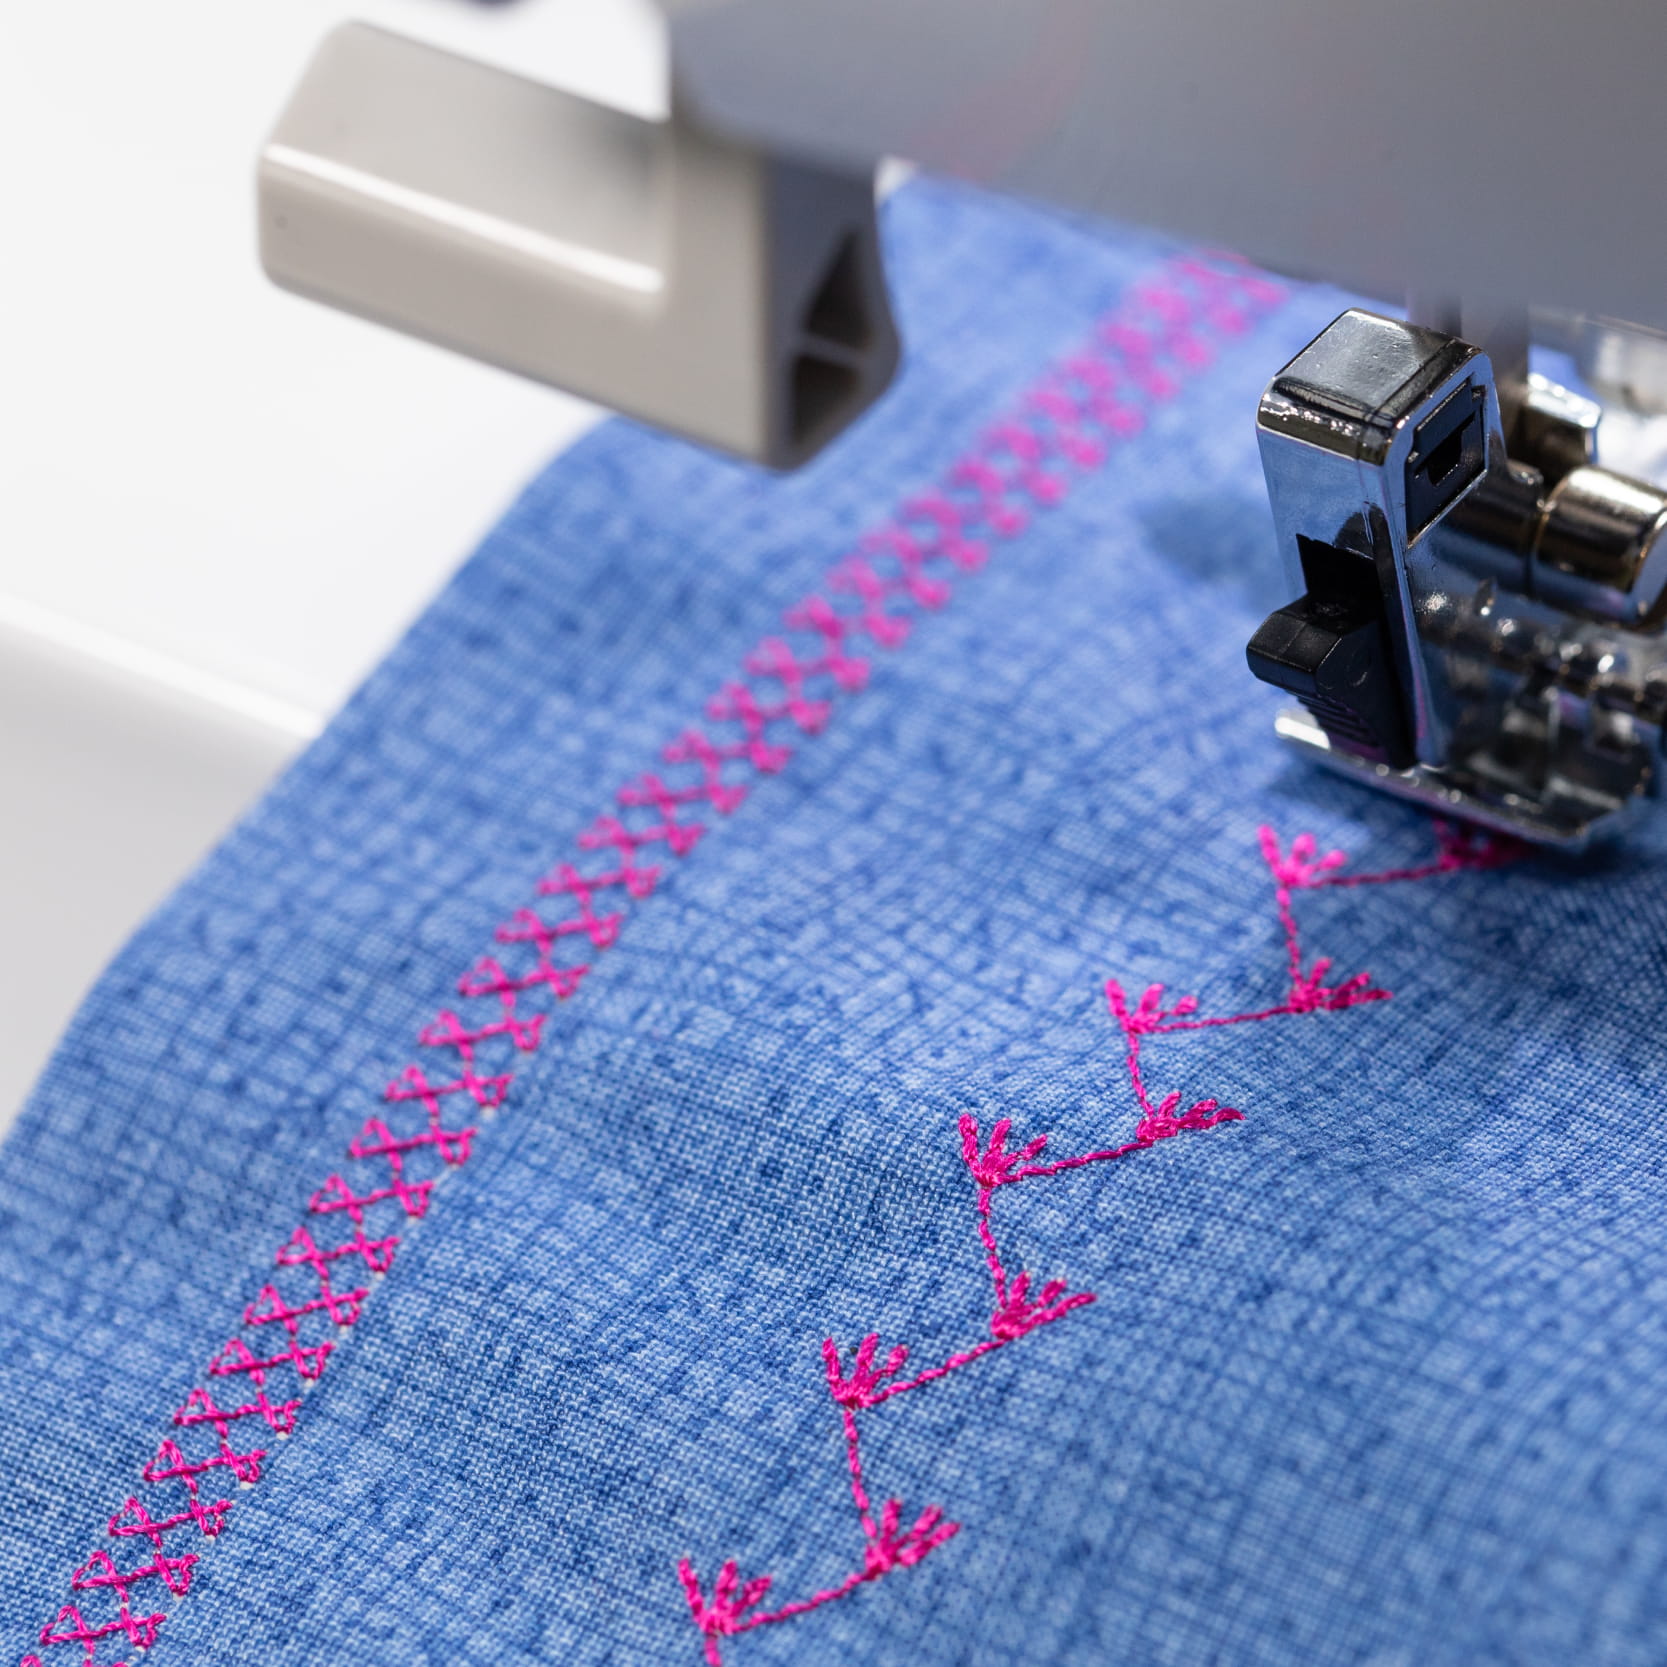 Embroidery Machine Feature - Custom Stitch